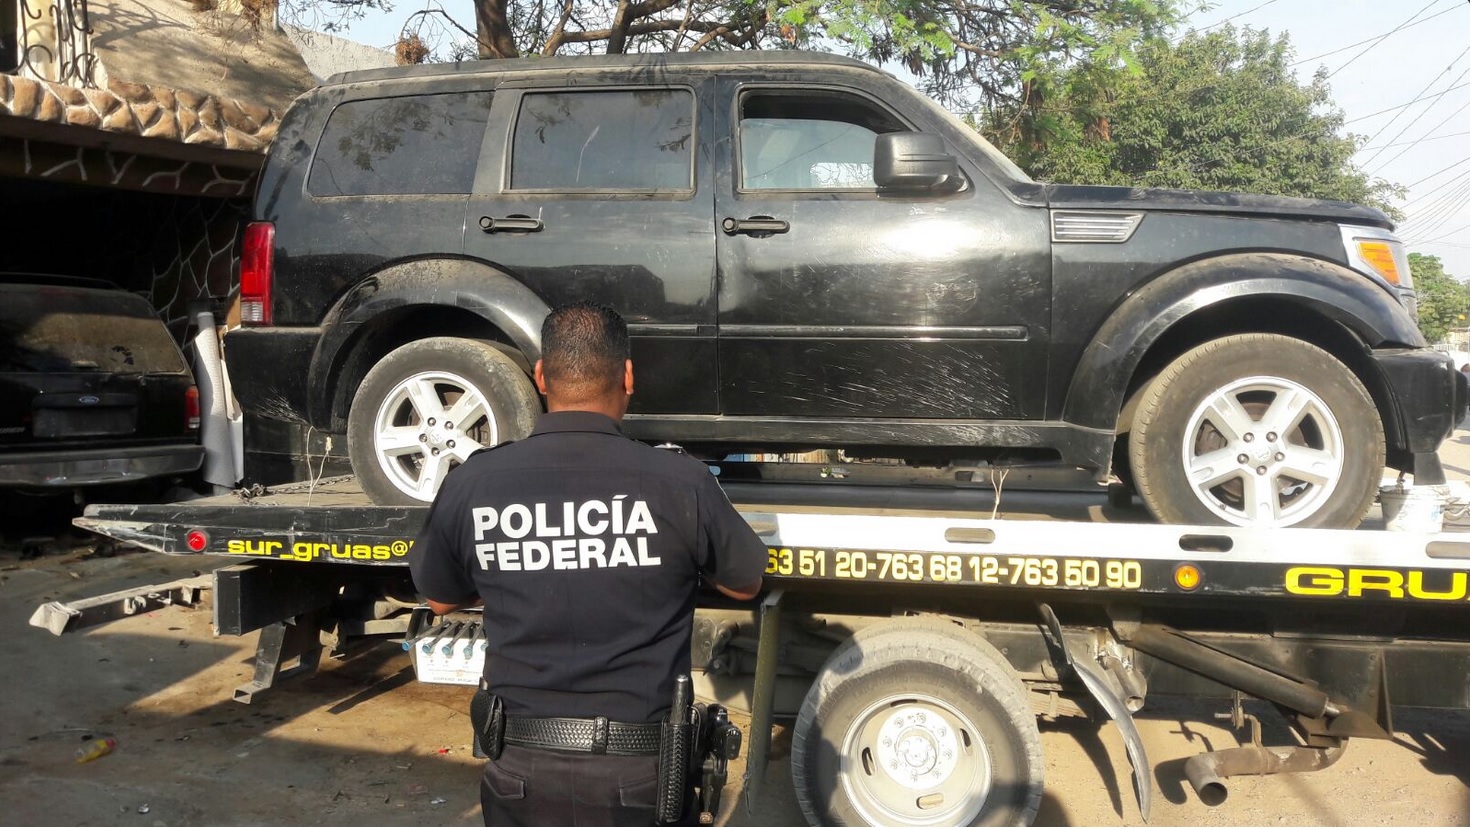 Policía Federal aseguró vehículos y armas en un predio en Guanajuato. (Twitter @PoliciaFedMx)